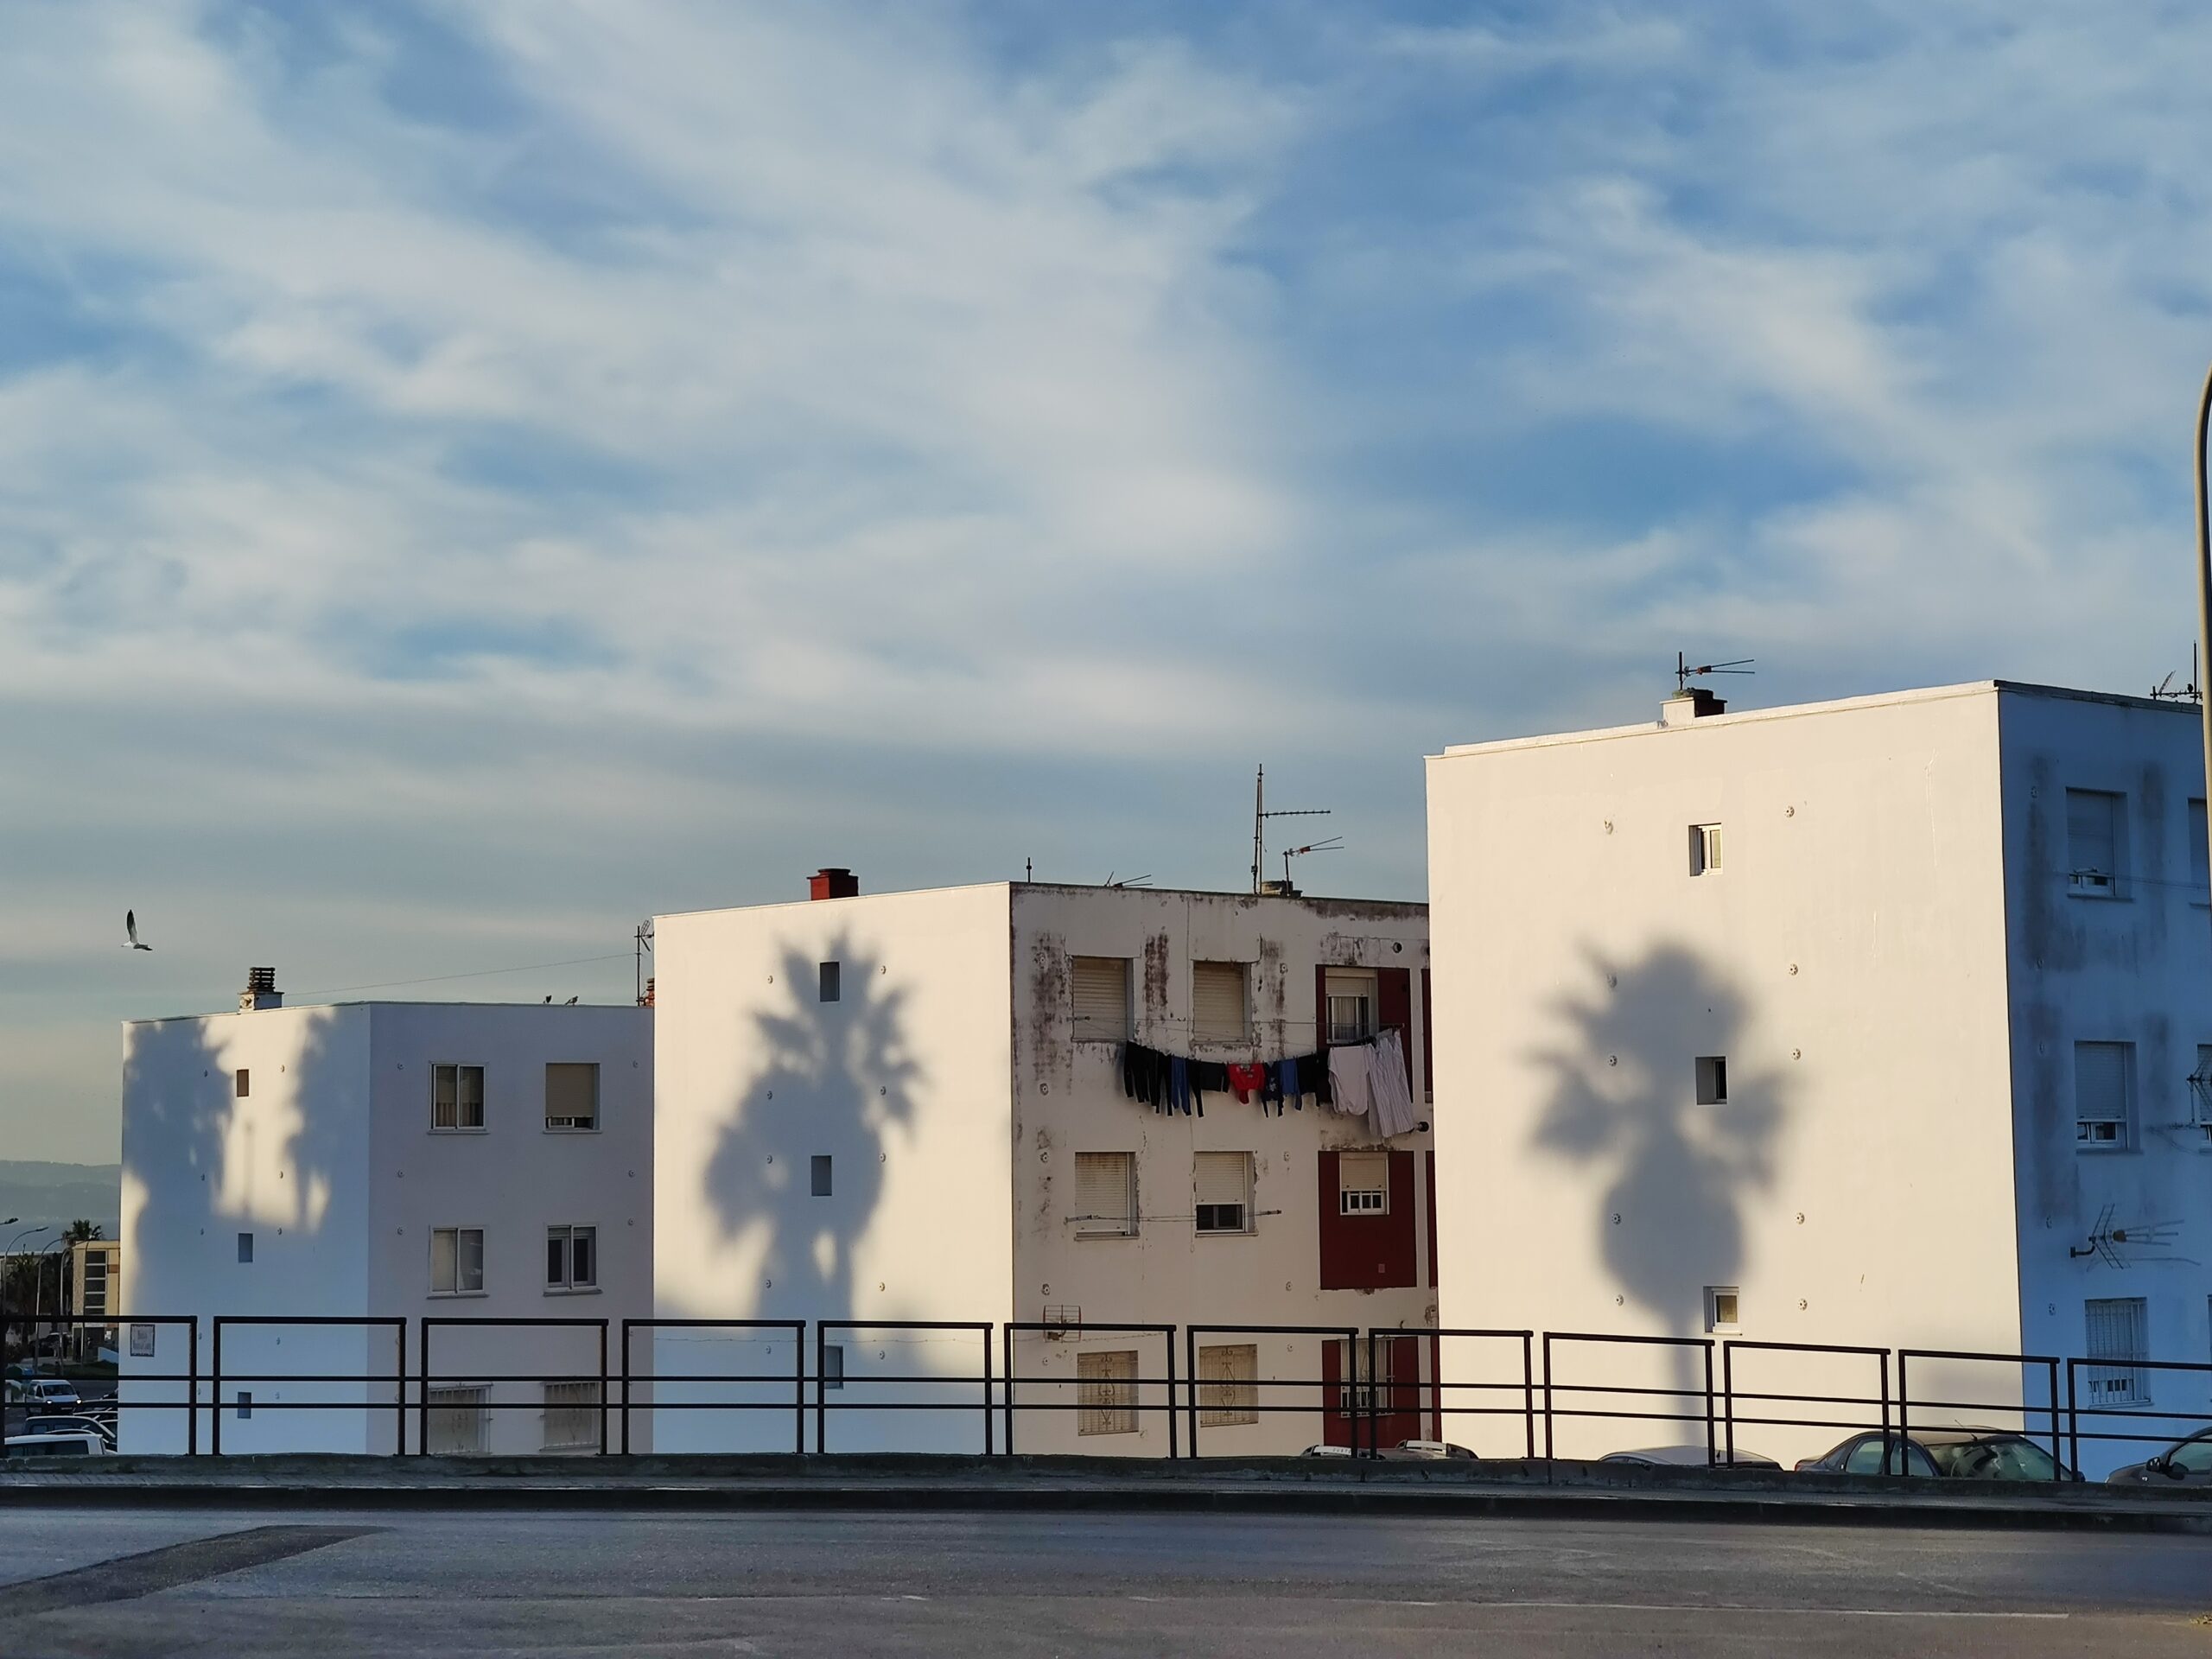 Yo vecino de Tarifa: ¿Por qué han borrado los murales gigantes de la entrada de Tarifa?